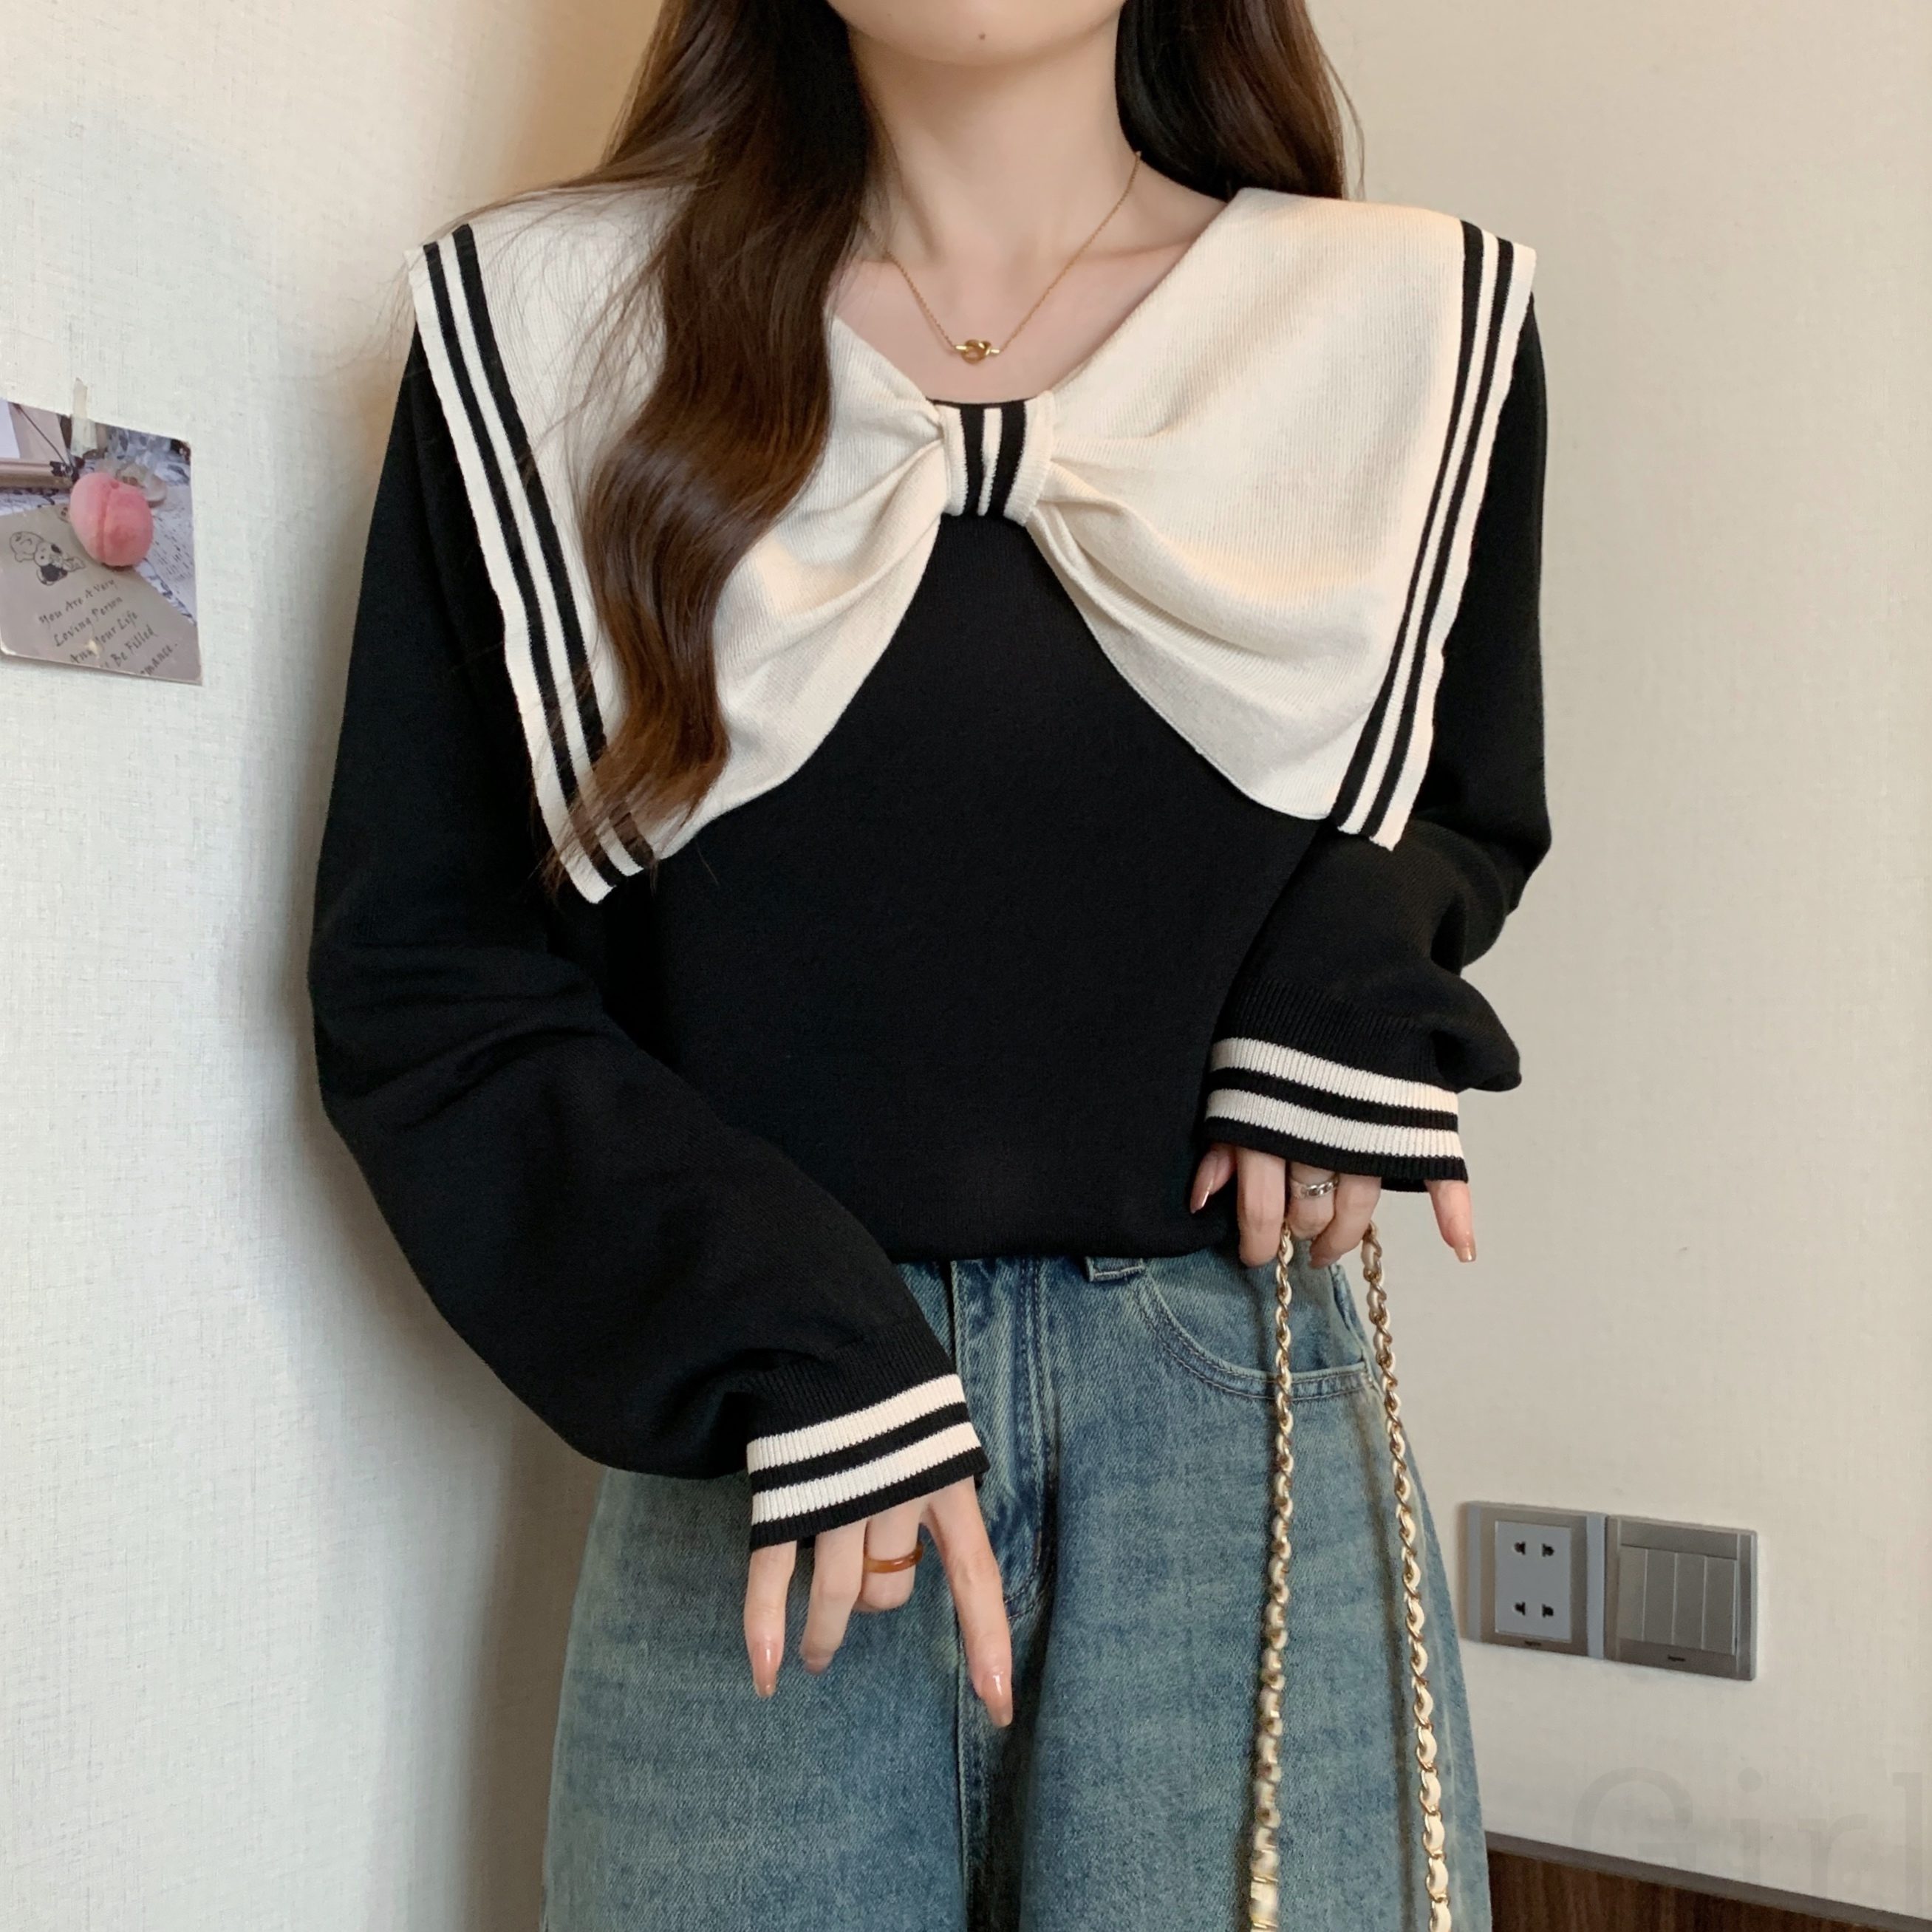 セーター・カットソー韓国ファッション オシャレ 服キュート長袖一般セーラーカラーリボン配色